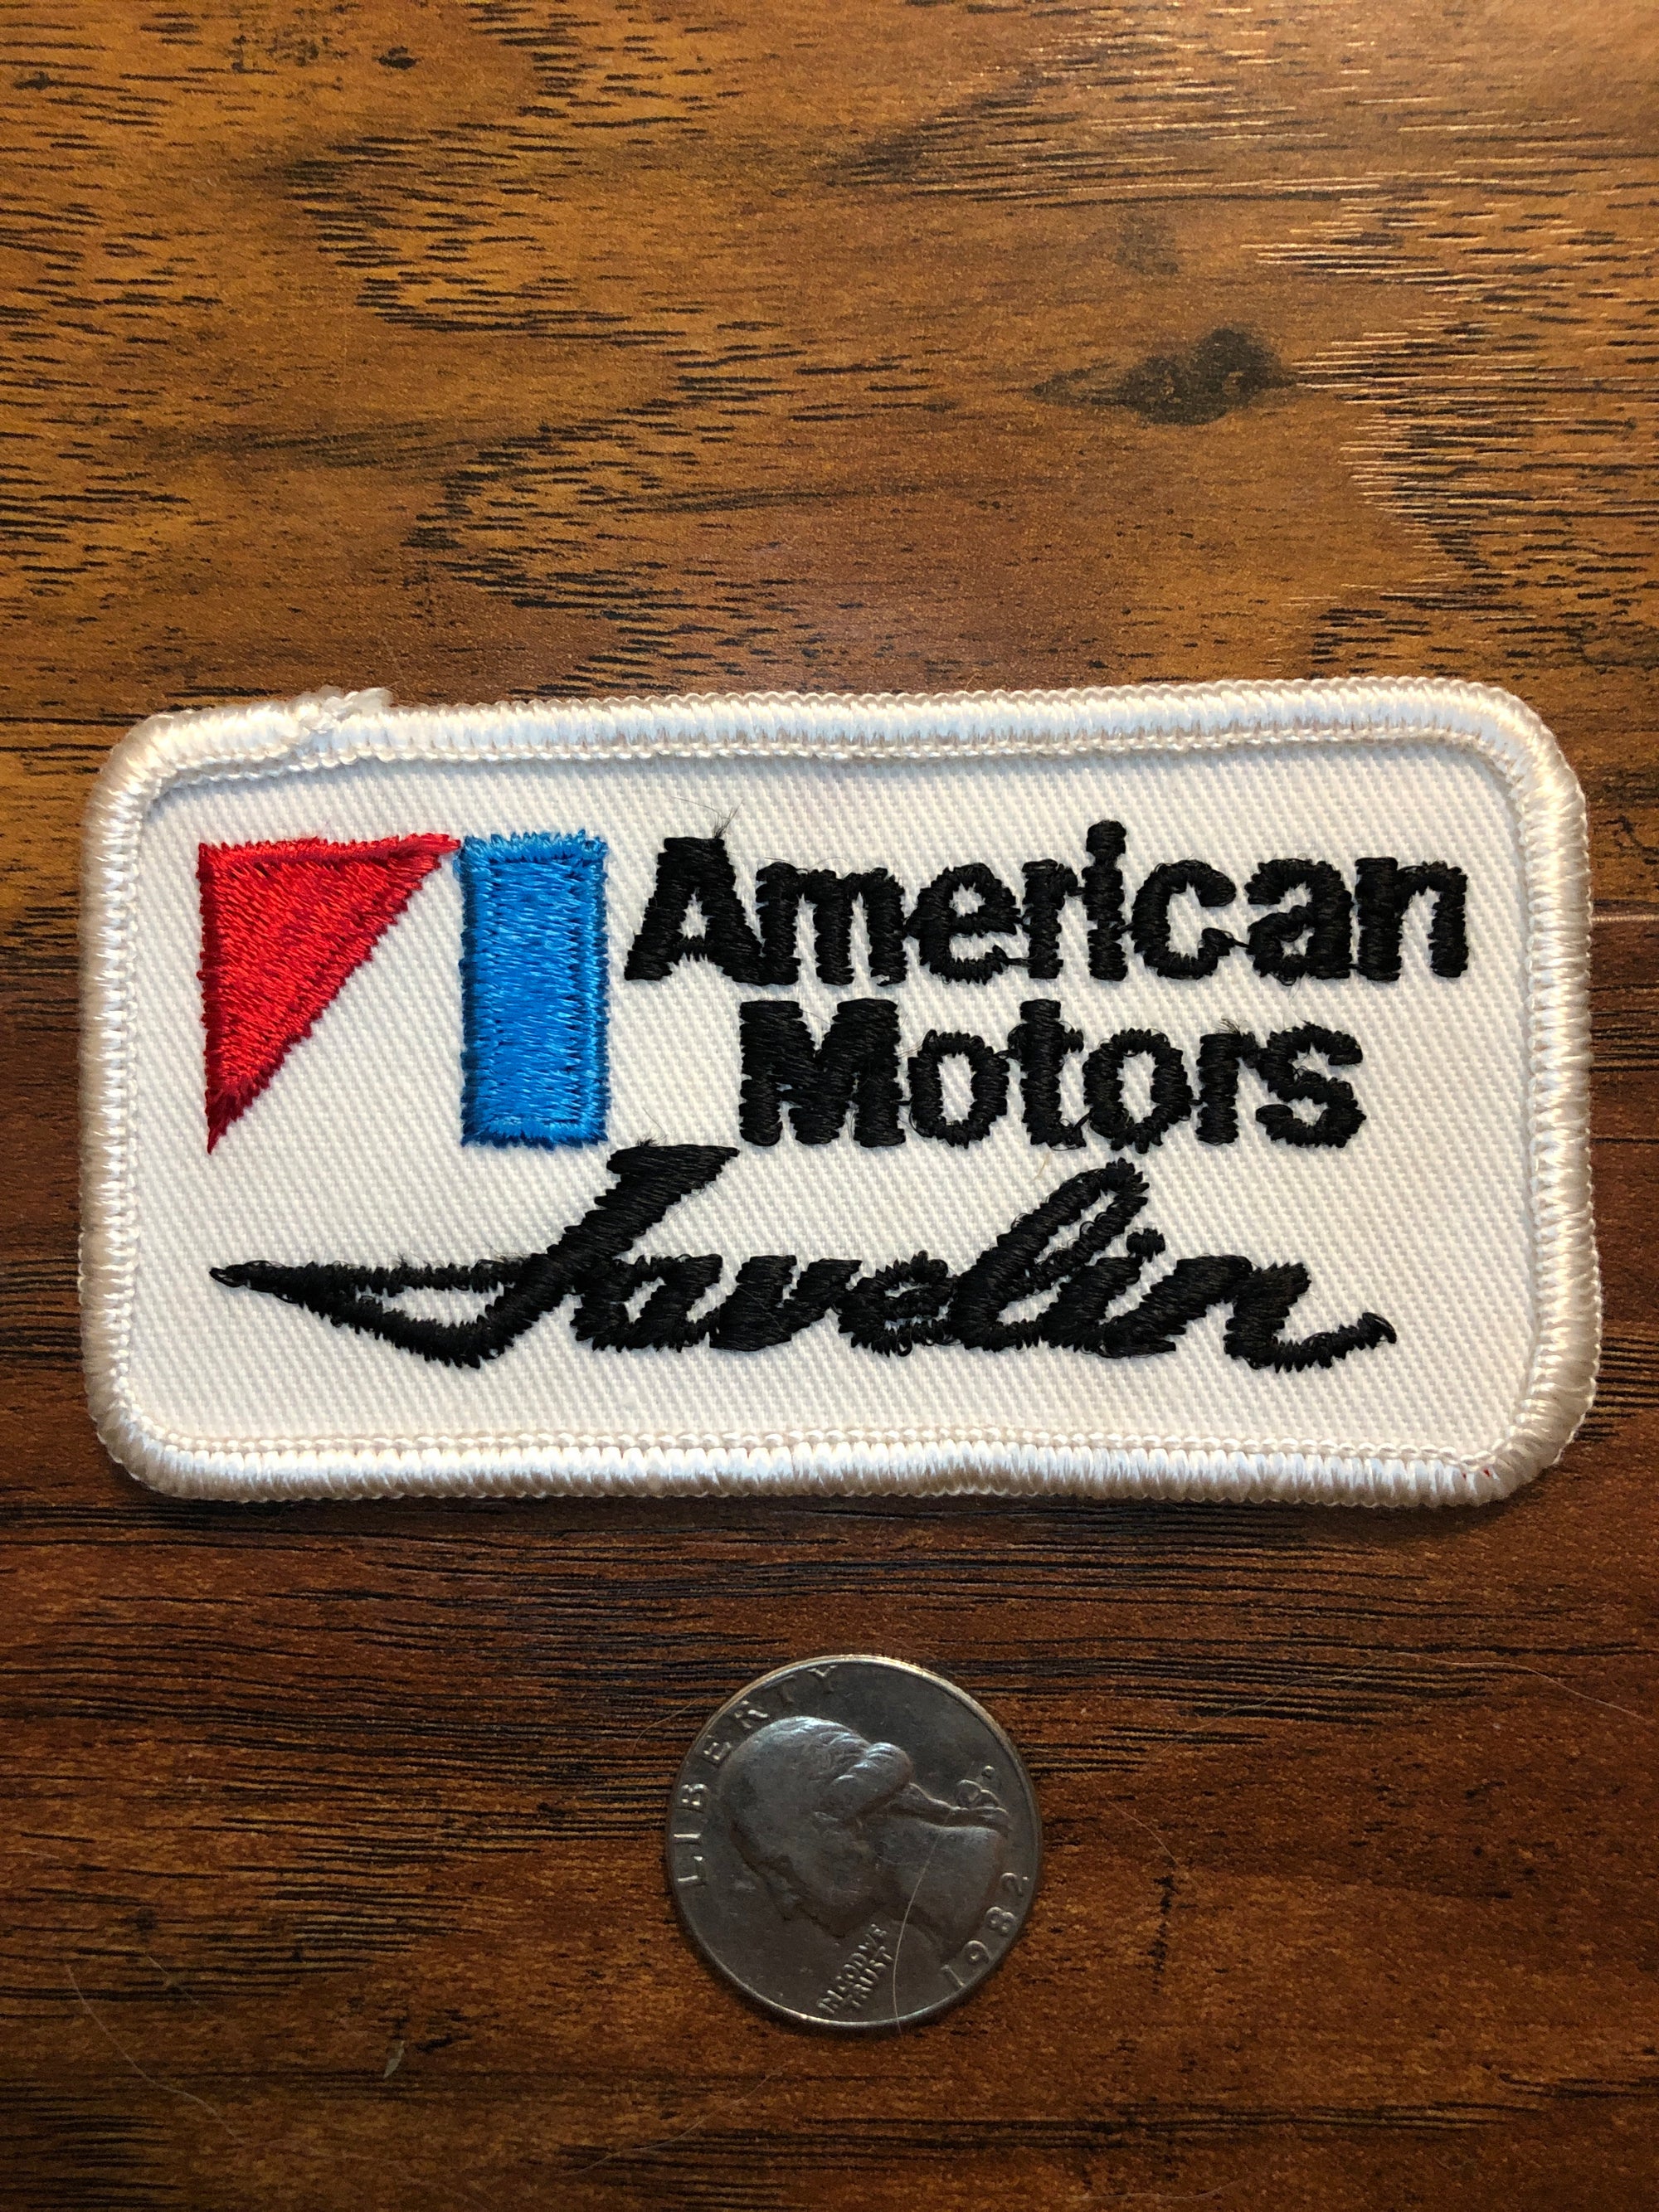 Vintage American Motors Javelin